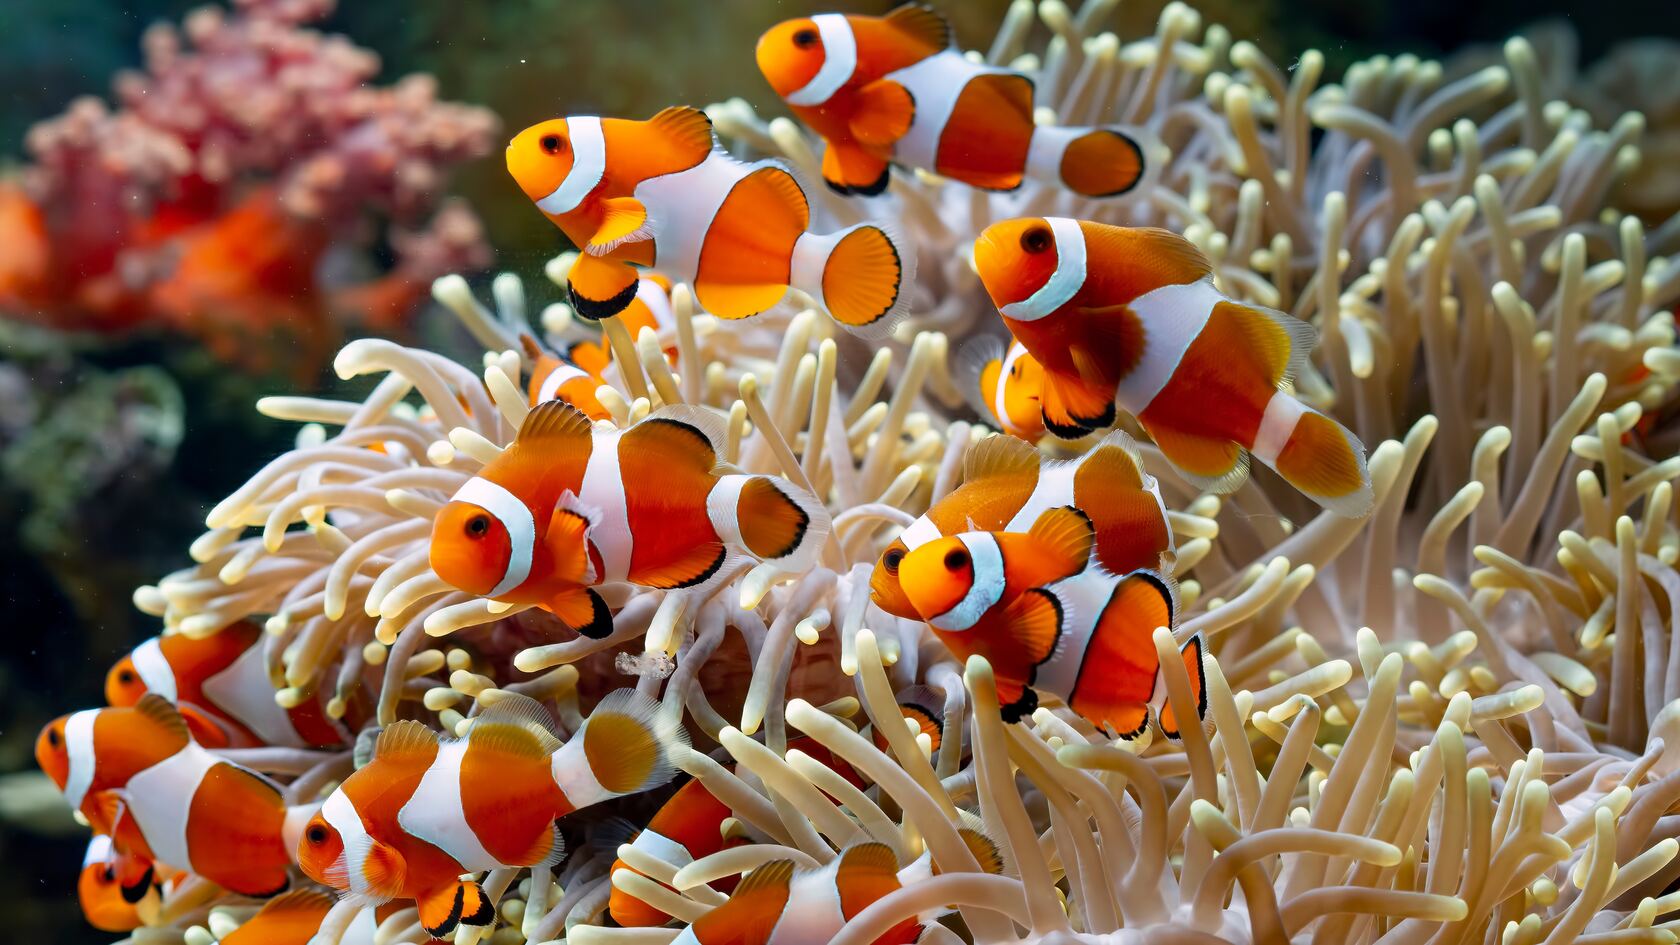 游荡在珊瑚丛中的一群漂亮小丑鱼高清海洋中桌面壁纸图片